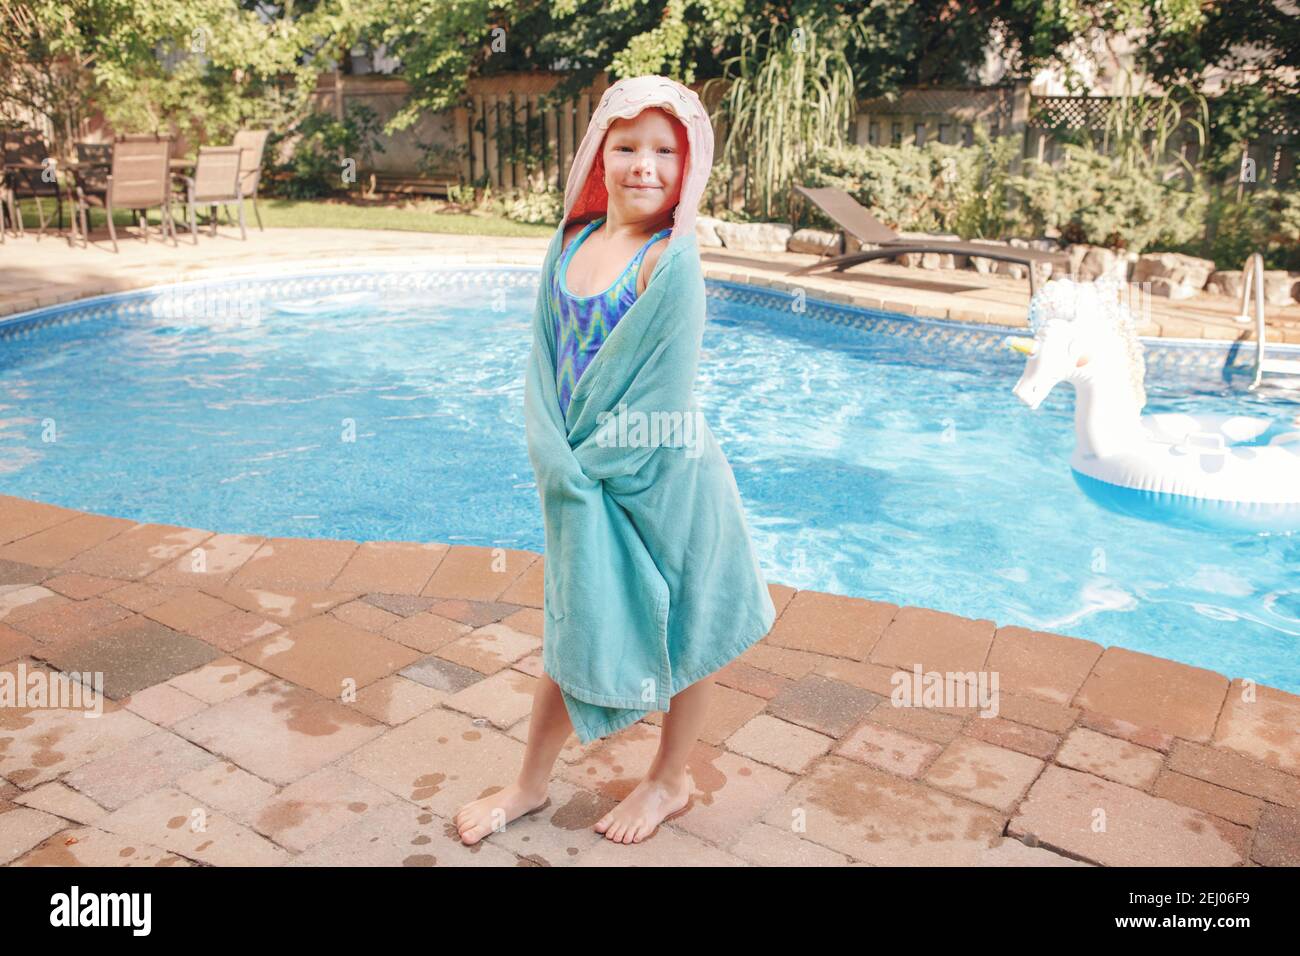 Jolie adorable fille avec des roussettes enveloppées dans une serviette de  plage au bord de la piscine. Sourire drôle enfant s'amuser dans la piscine.  Activités aquatiques extérieures en été Photo Stock -